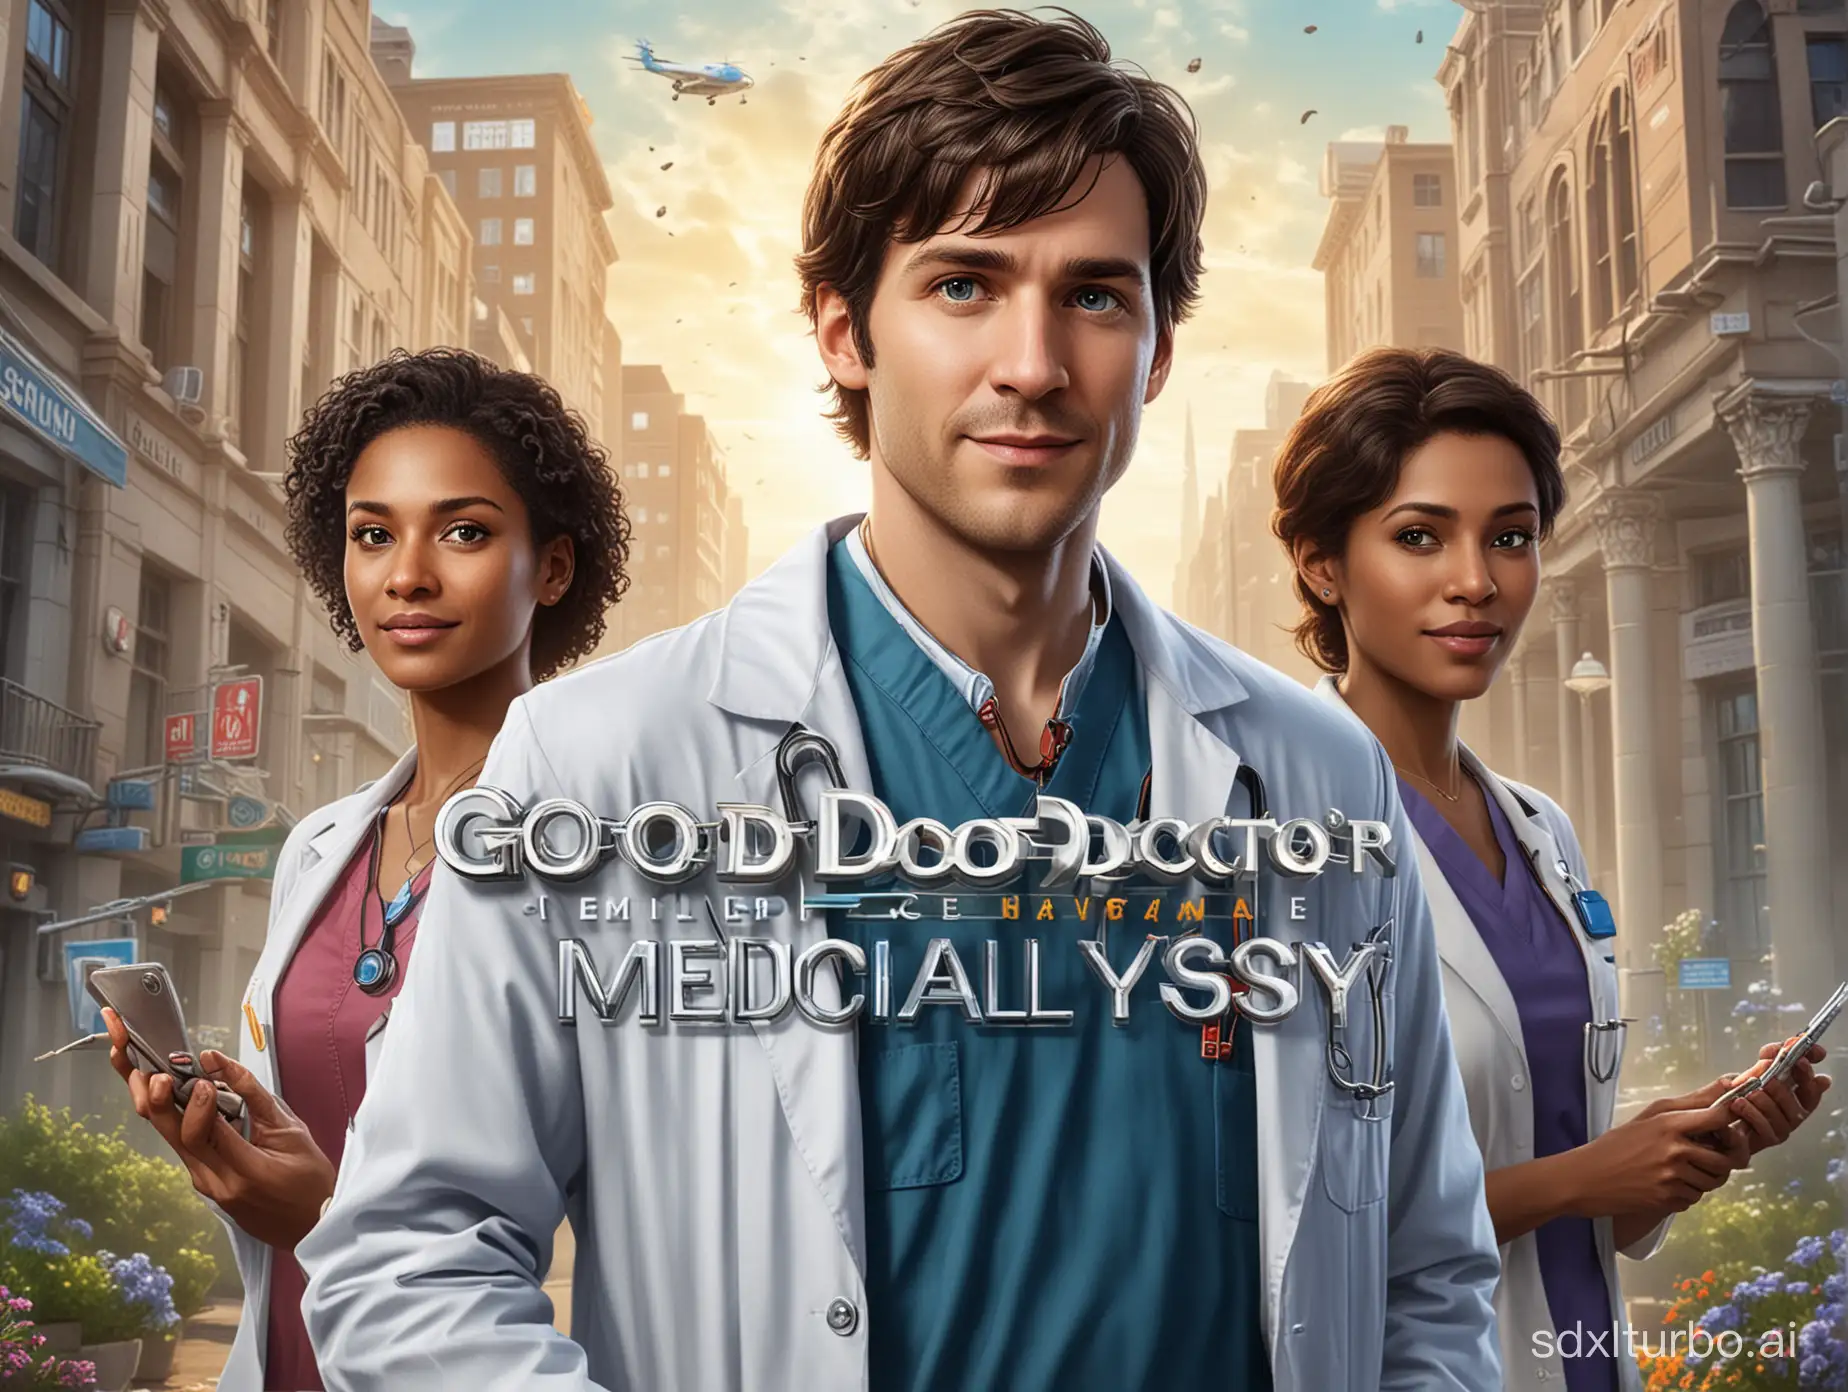 un immagine di  copertina stile realistico di un gioco PC di medecina con titolo "Good Doctor: Medical Odyssey" .